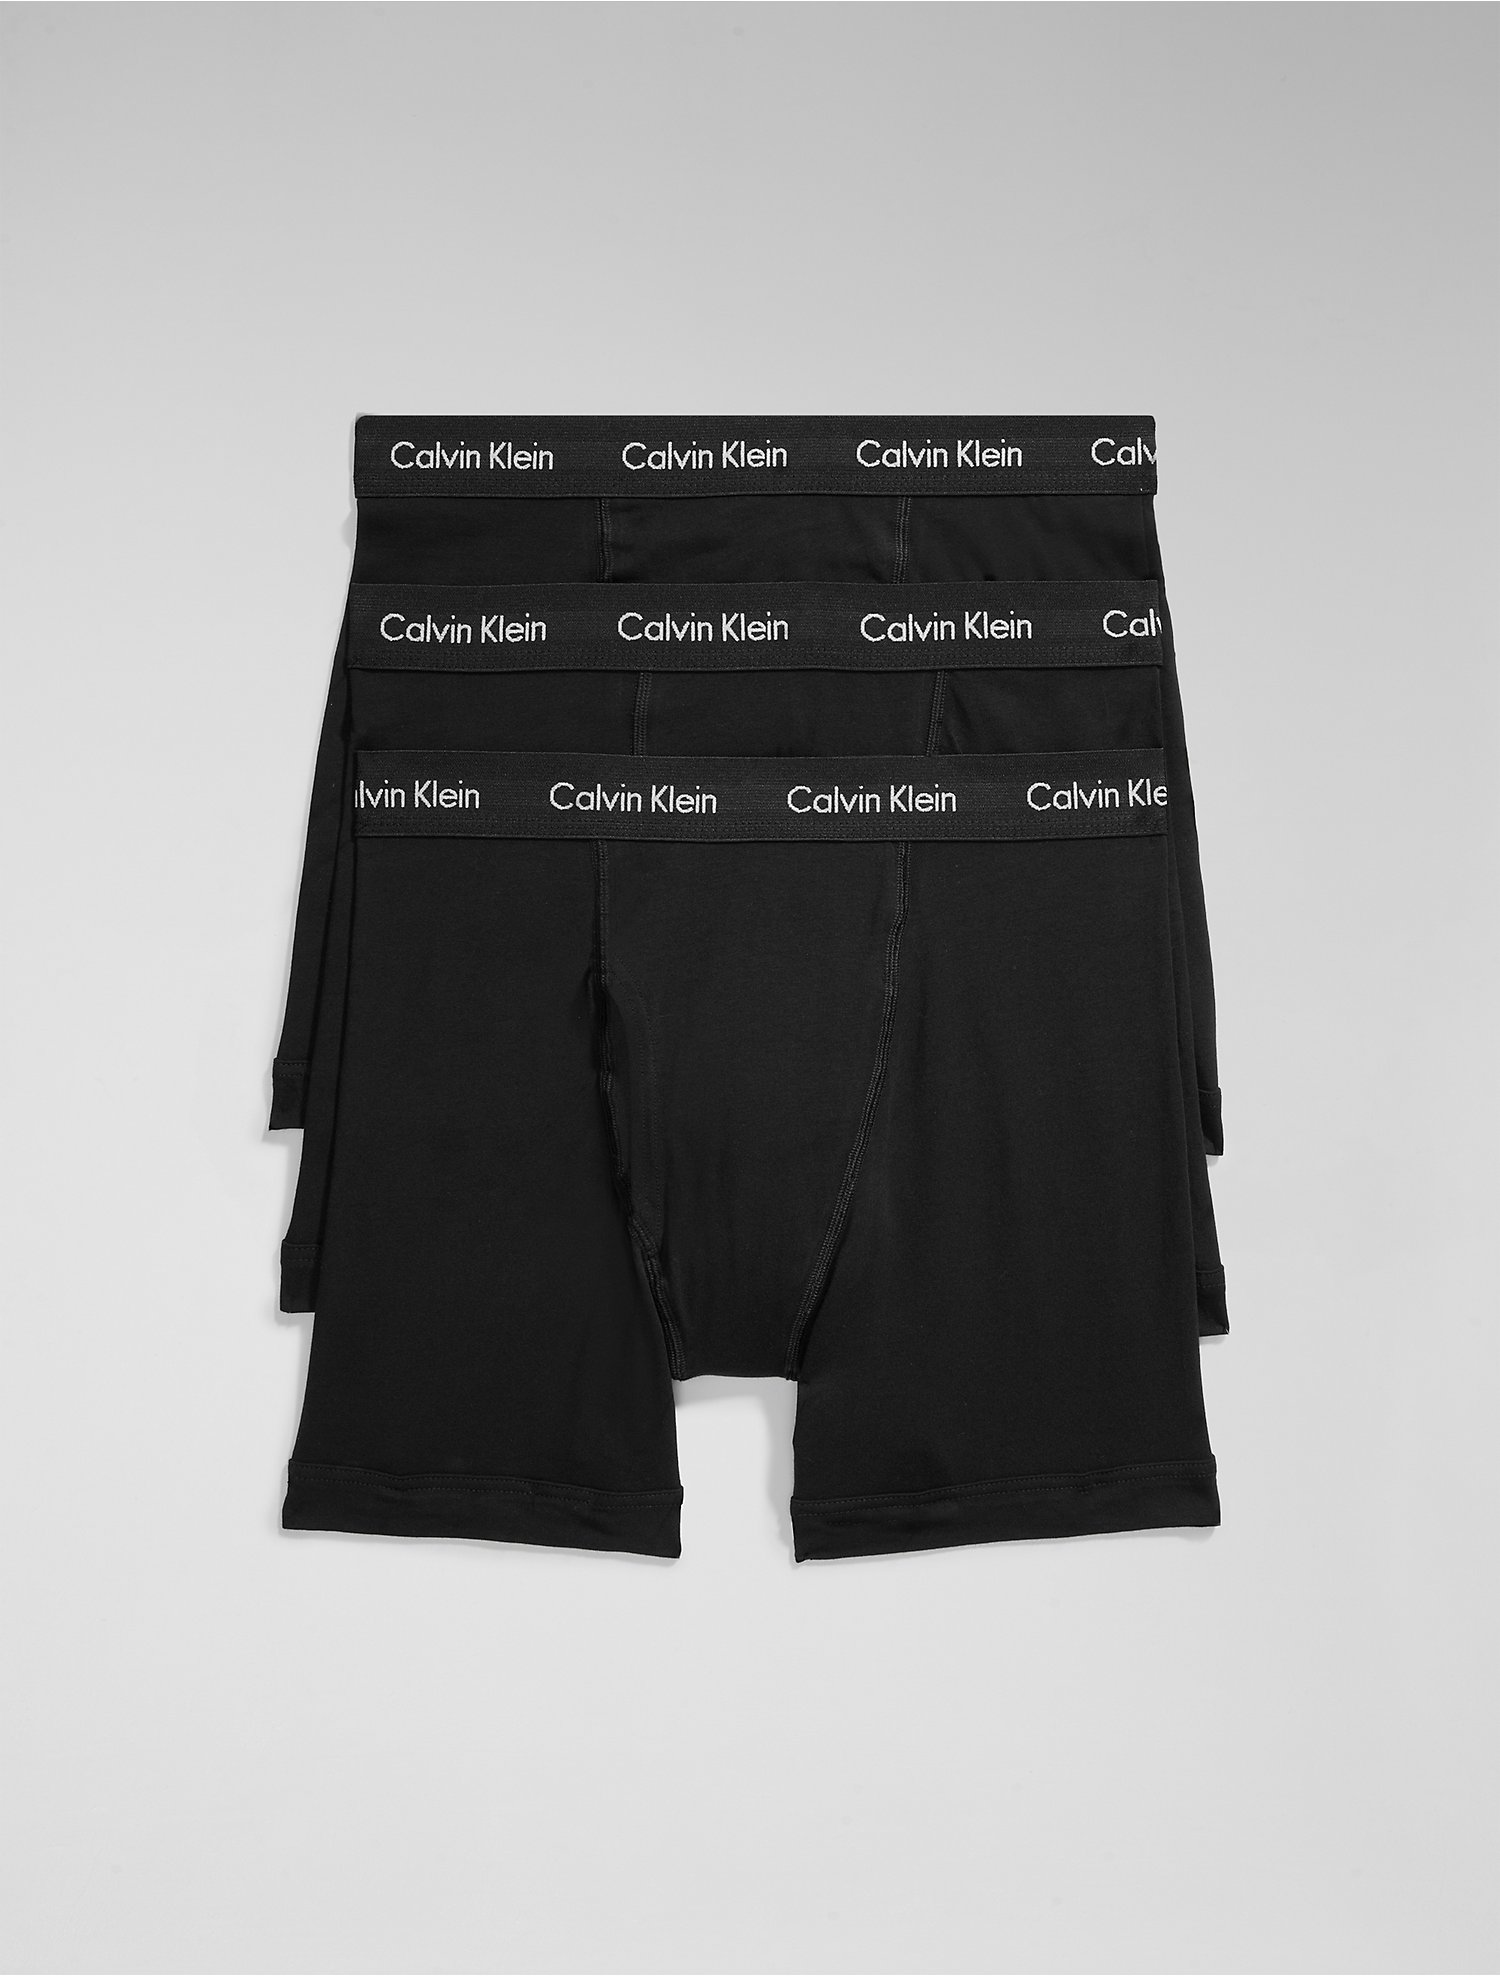 Cotton 3-Pack Boxer Brief Calvin Klein